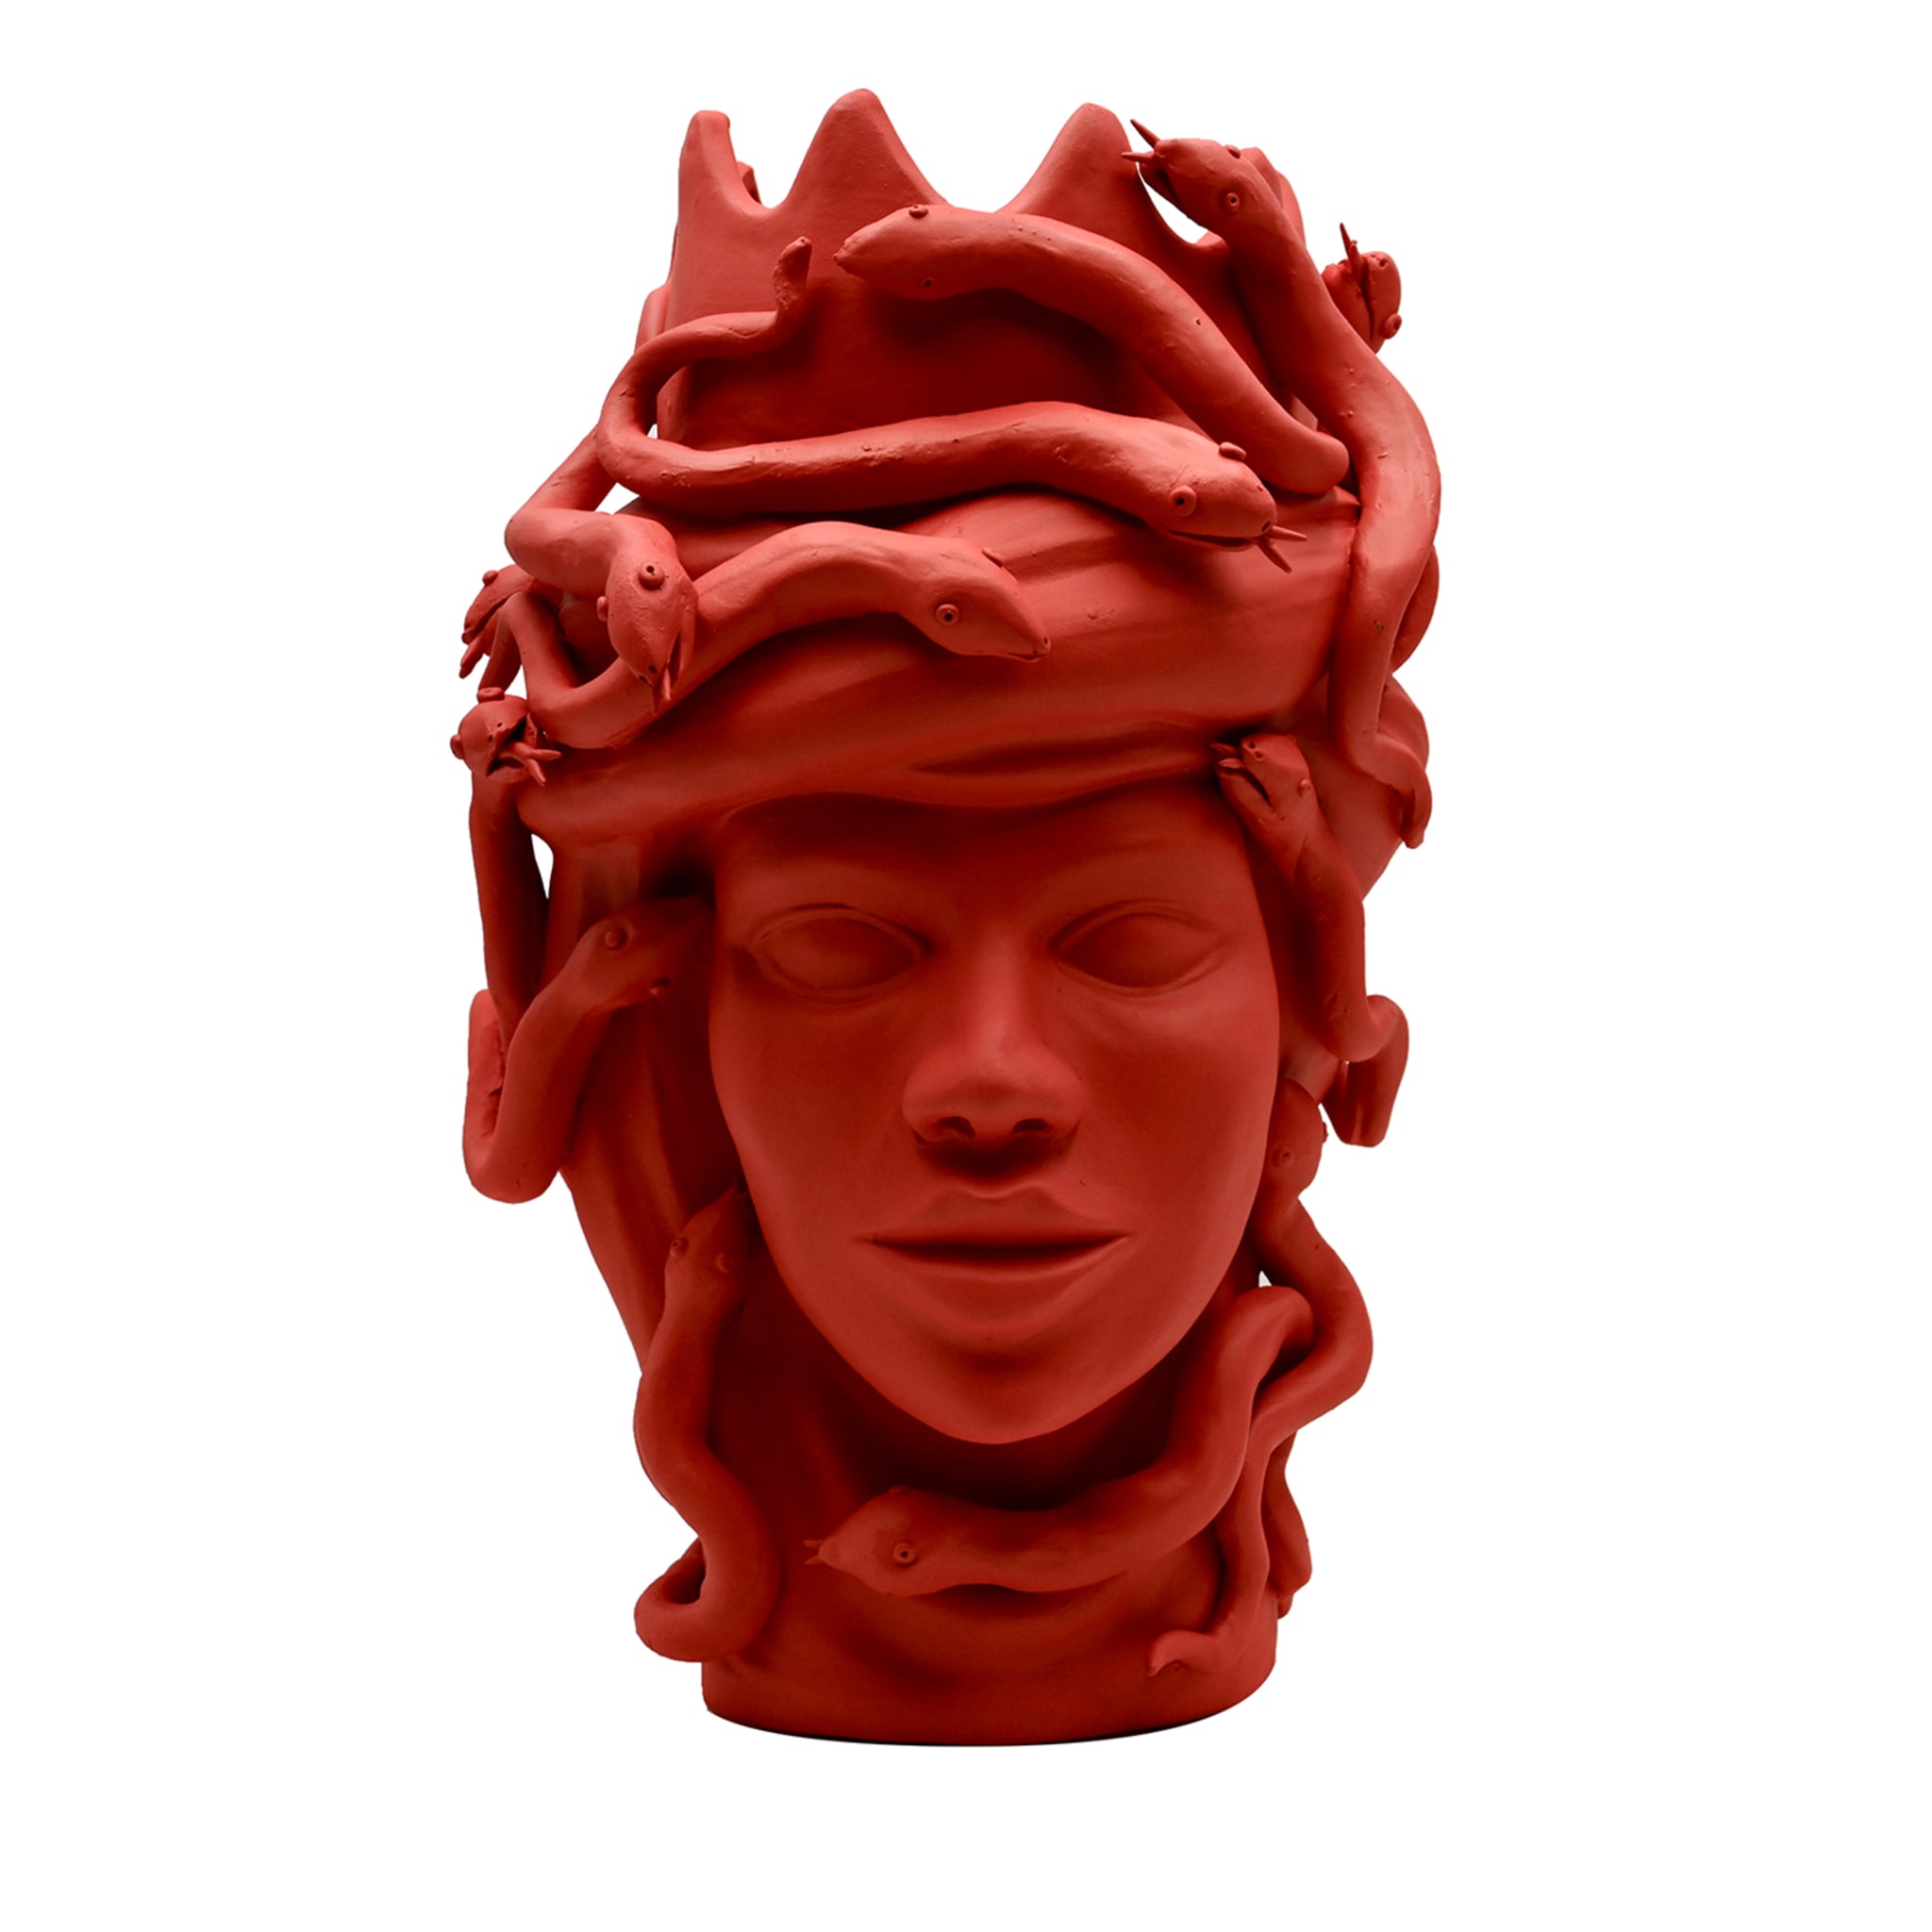 Moor's Head Red Sculpture